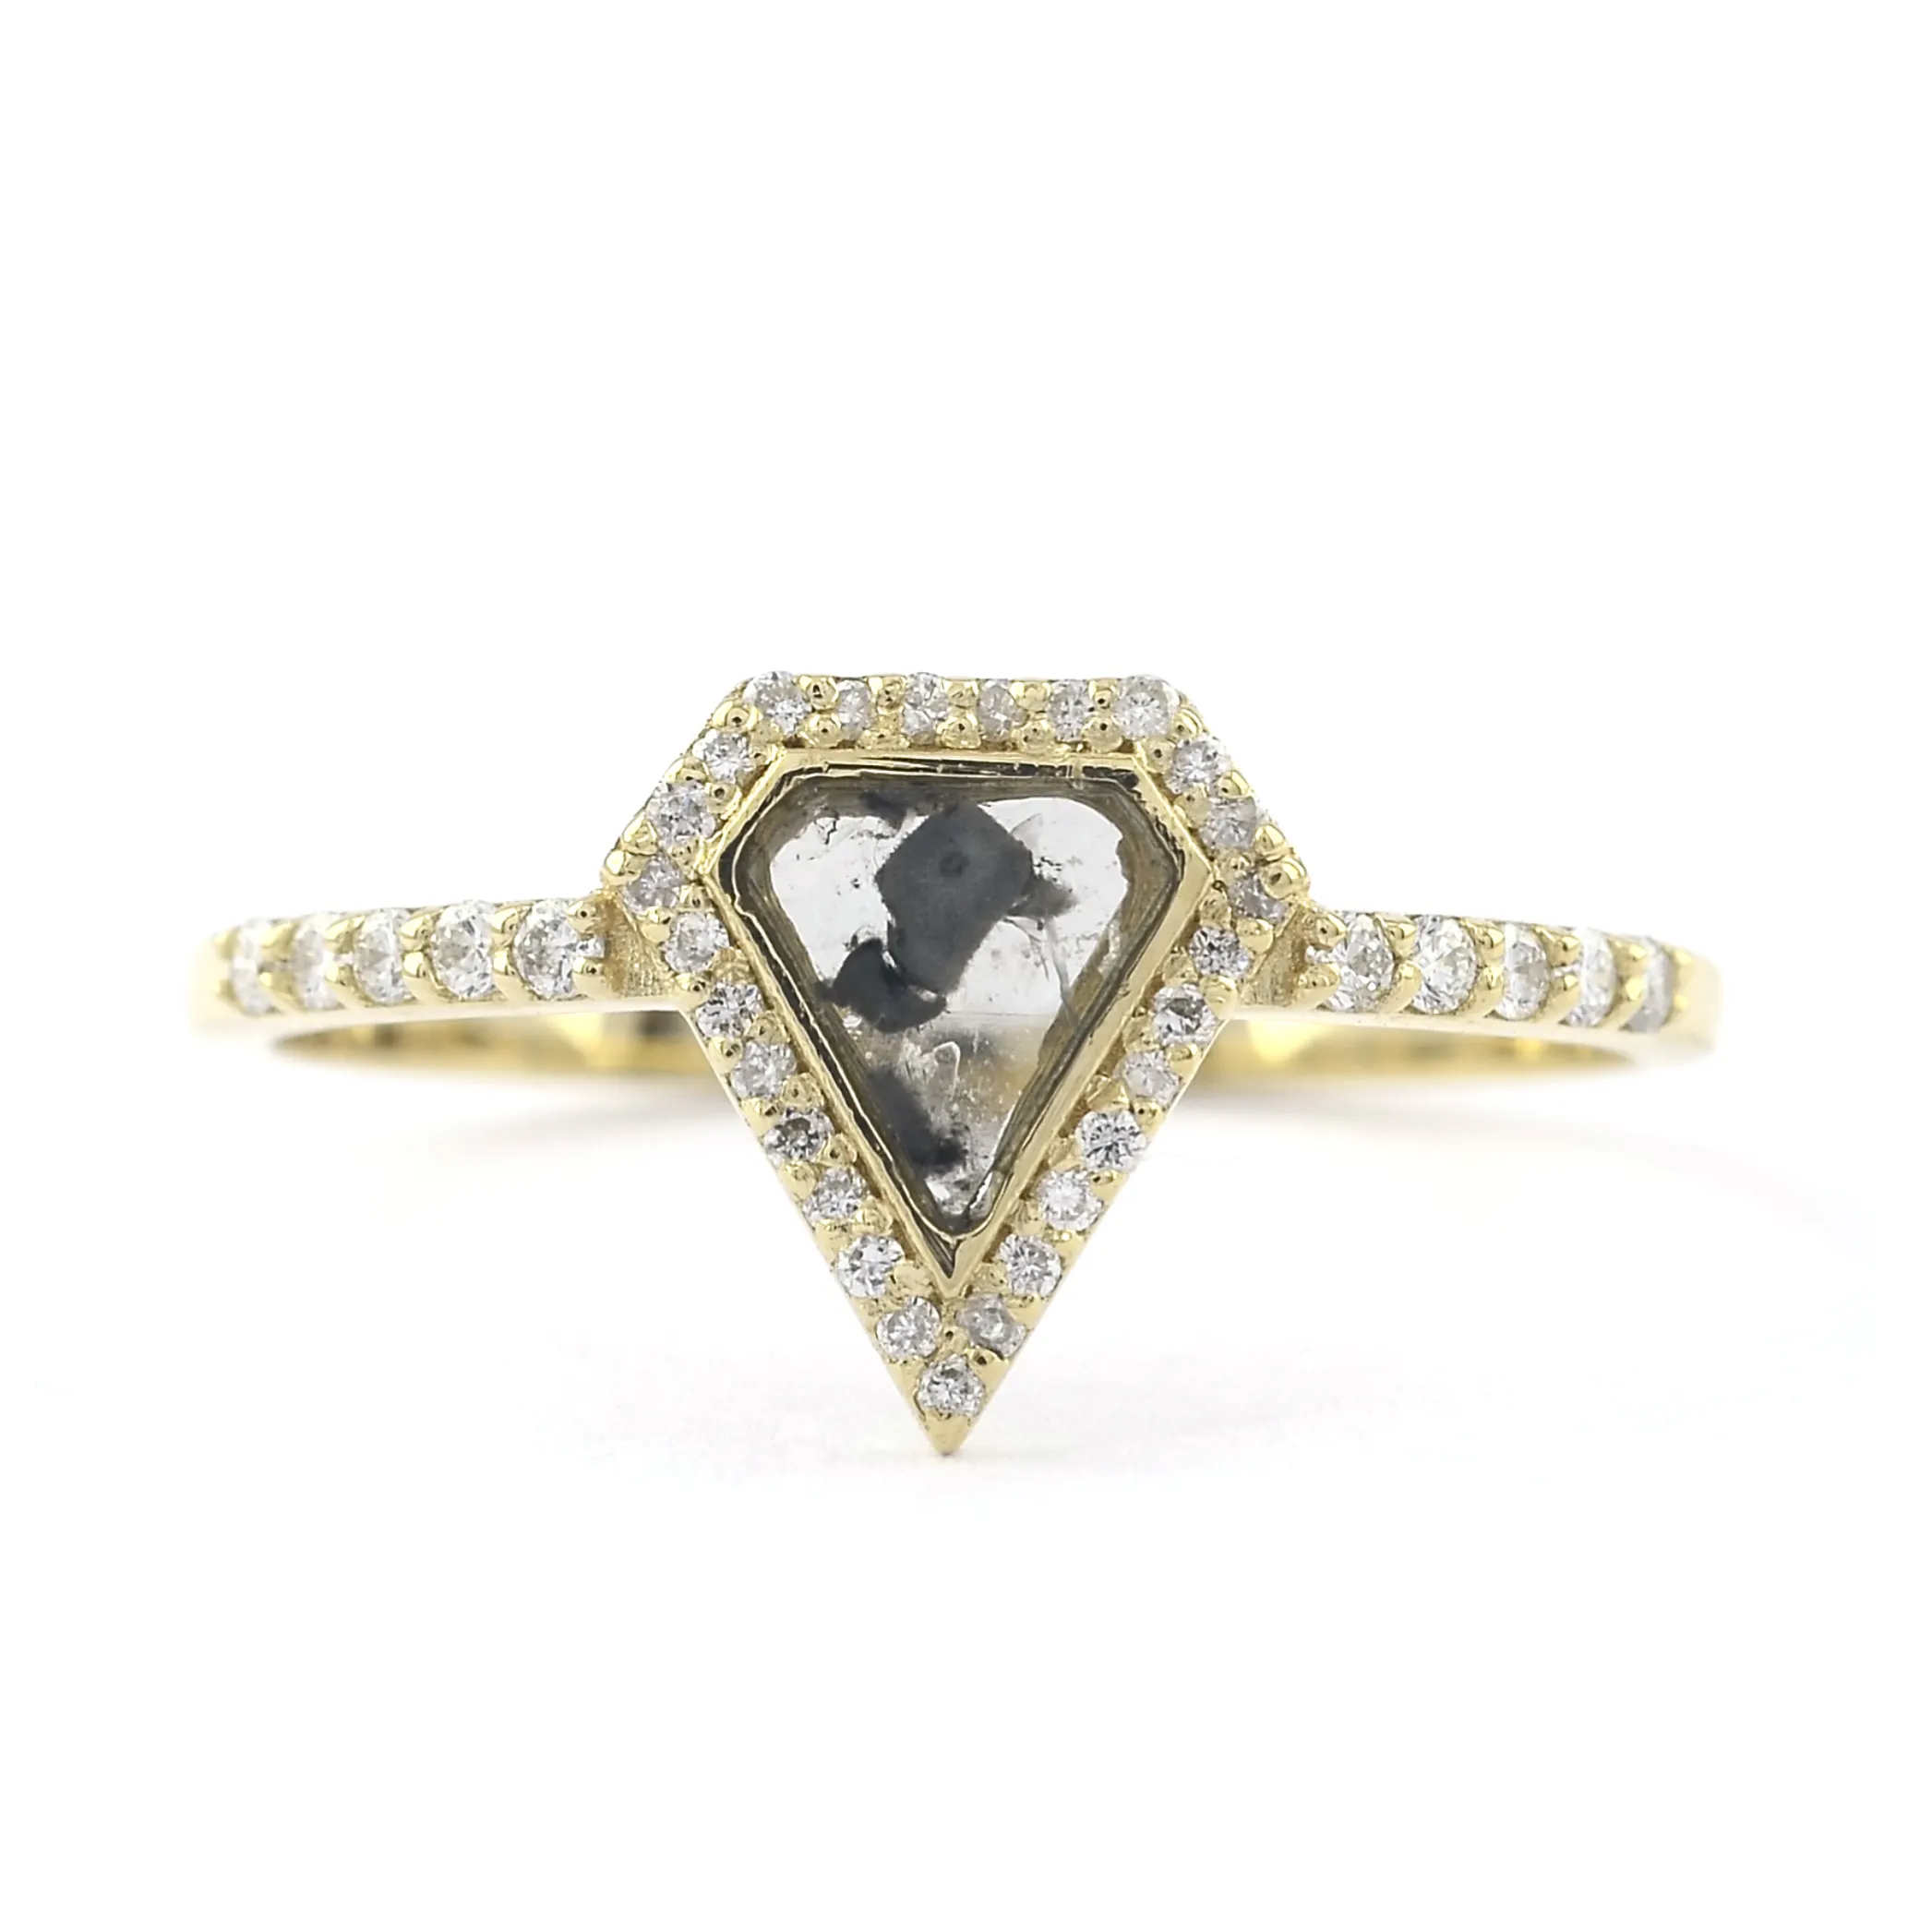 Joyería de diamantes 18K oro sólido anillo de diamantes genuinos sal y pimienta rebanada diamante compromiso anillo de bodas artesanía joyería de oro